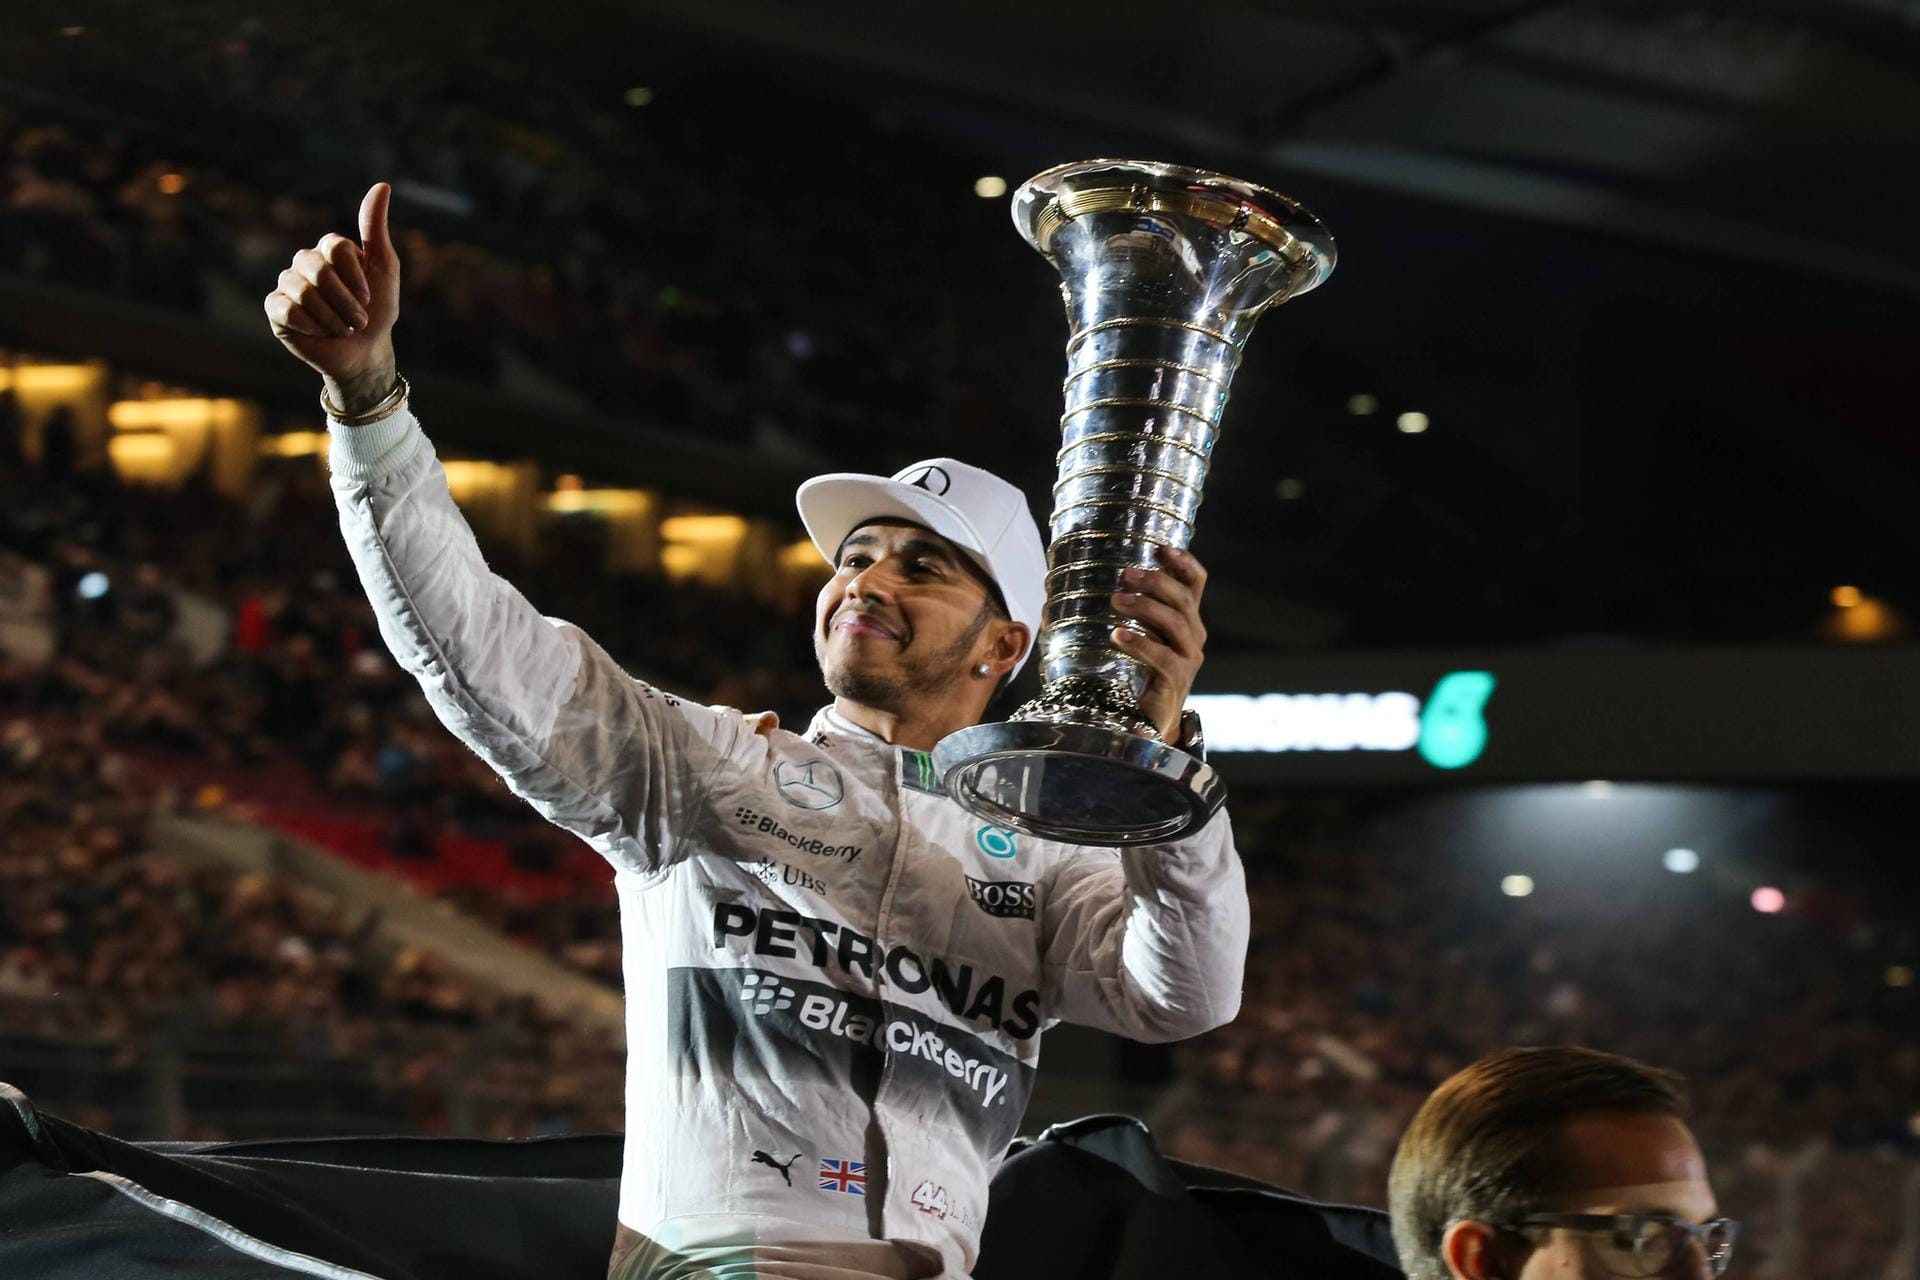 Vor der Saison 2014 wechselte der Brite von McLaren-Mercedes zum Mercedes-Werksteam. An der Seite von Nico Rosberg fuhr Hamilton im Silberpfeil der Konkurrenz davon. Die einstige Freundschaft entwickelte sich im Laufe der Saisons aber immer mehr zur Feindschaft.